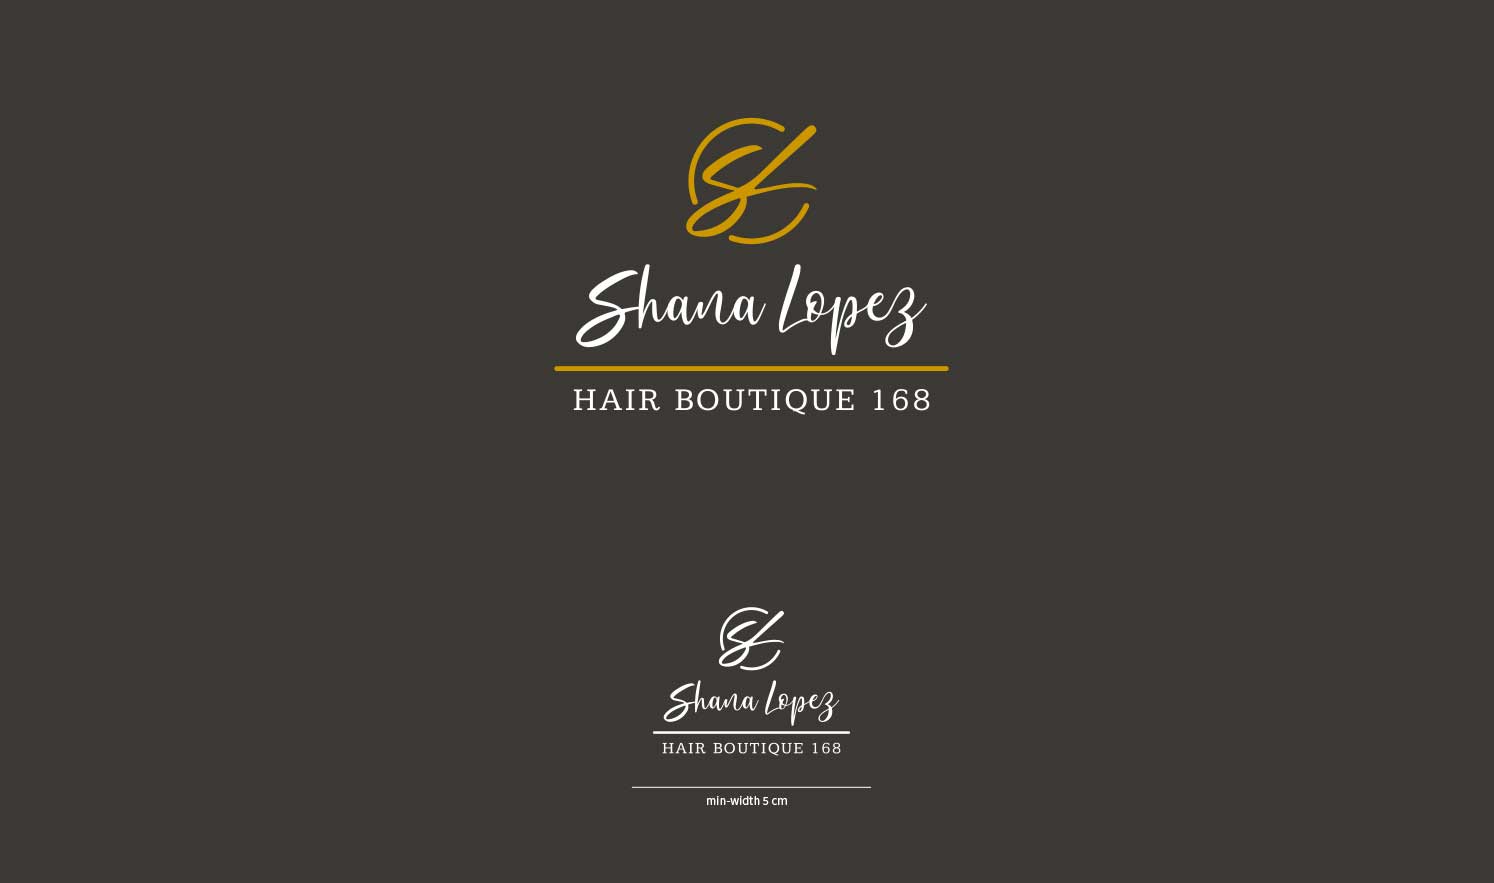 design brand identity hair boutique formato orizzontale